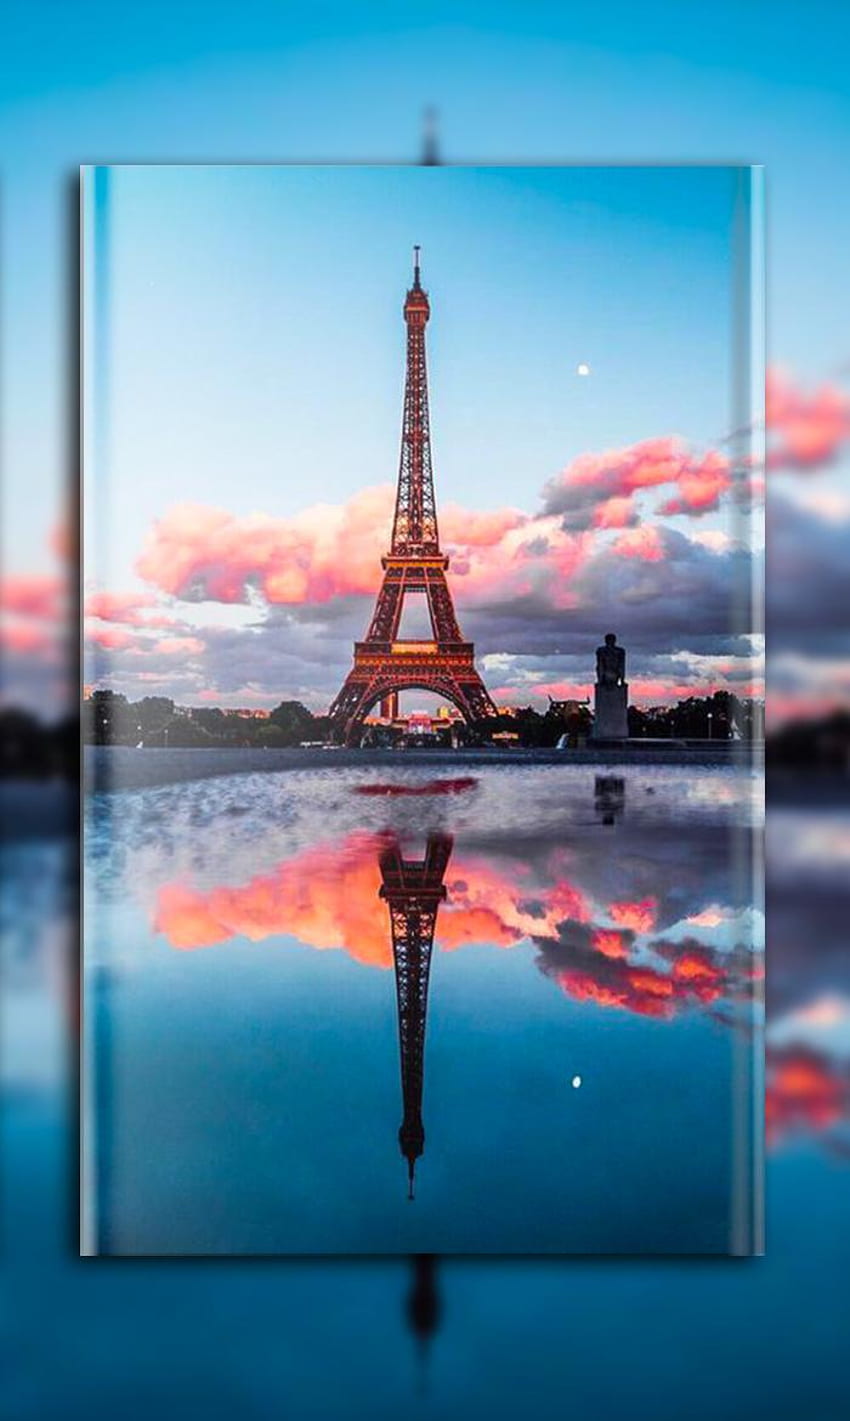 París: Torre Eiffel, ciudad de la luz, femenina for Android - APK, Elegant Paris fondo de pantalla del teléfono